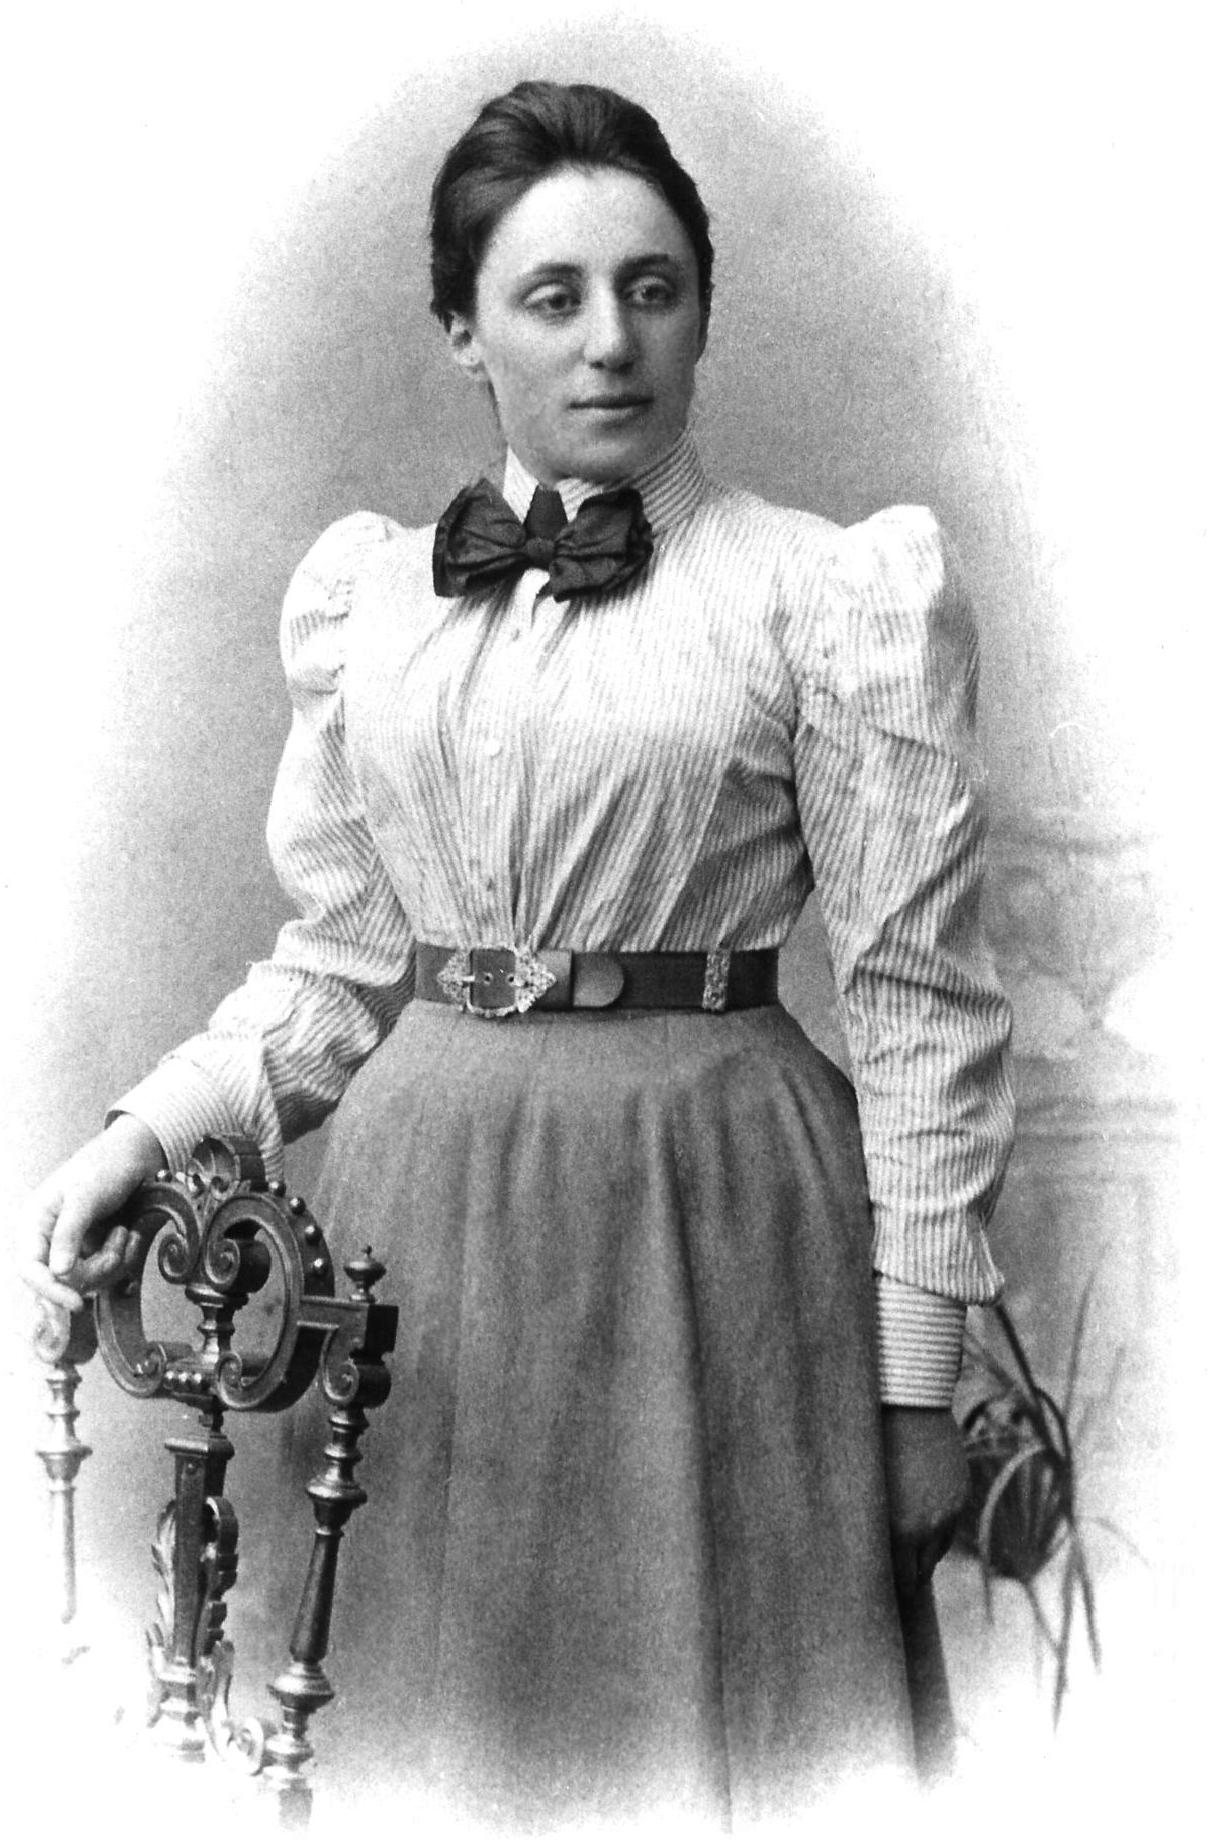 Amalie Emmy Noether (1882.-1935.) bila je njemačka matematičarka koja je dala važan doprinos apstraktnoj algebri. Albert Einstein i brojni drugi znanstvenici su za nju govorili kako je najvažnija žena u povijesti matematike. Na fakultetu na njemačkom sveučilištu Göttingen, predavala pod imenom muškog kolege jer se vodstvo fakulteta protivilo tome da studentima predaje žena.
